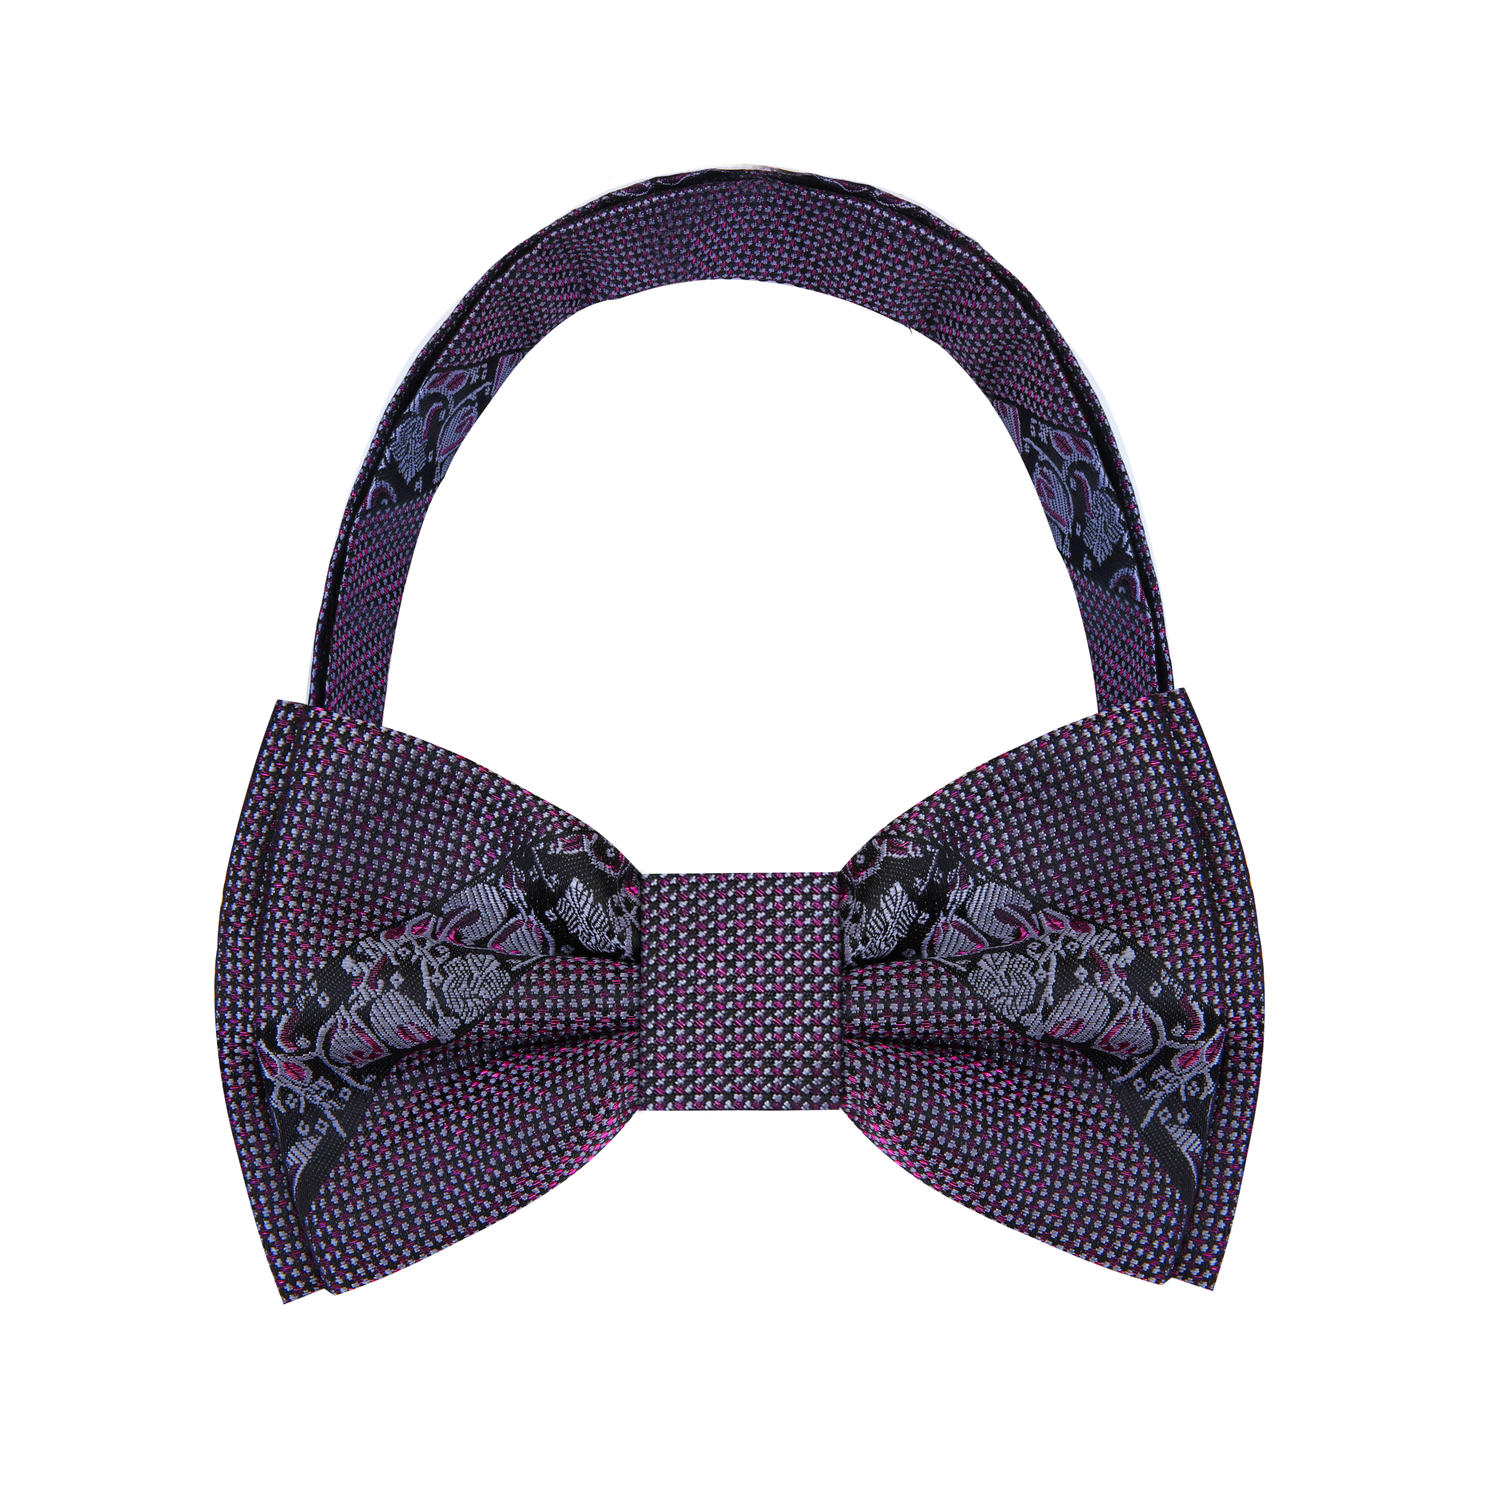 Metallic Purple Black Floral Bow Tie  Pre Tied